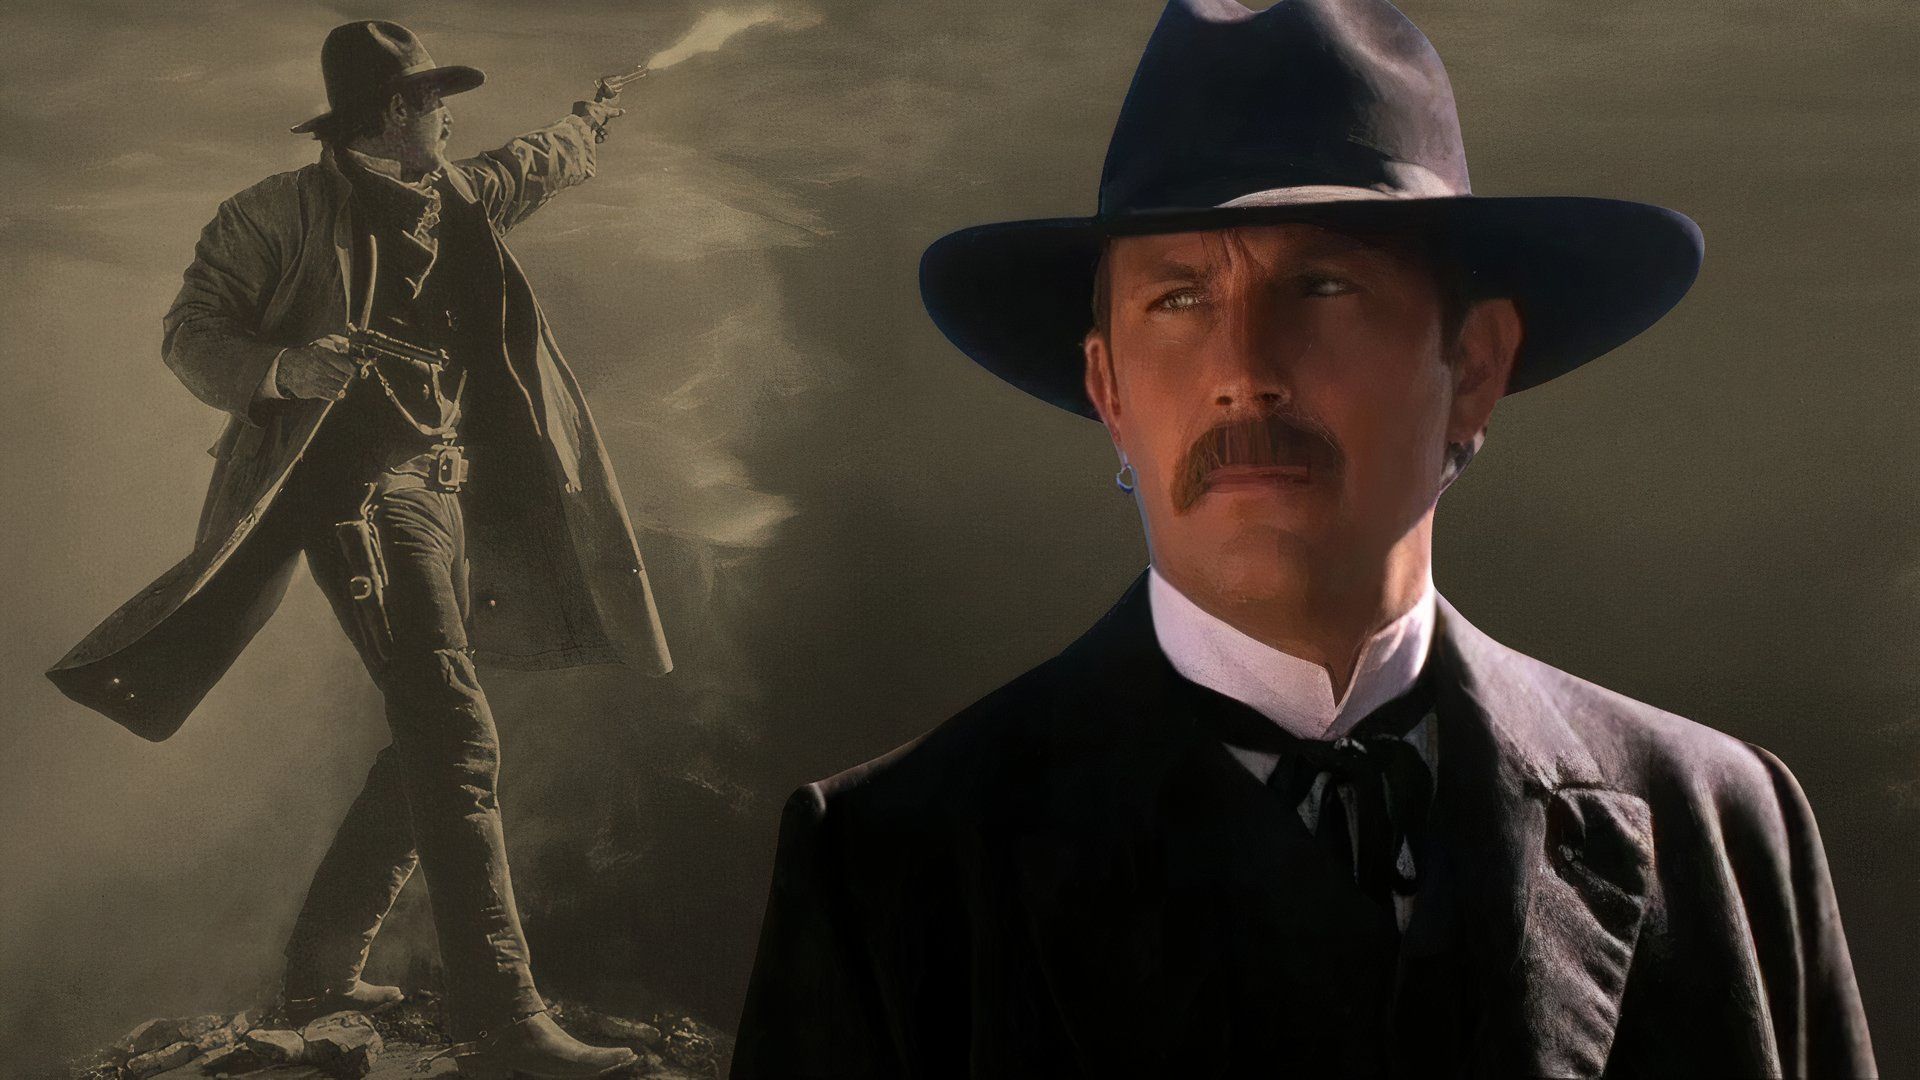 An edited image of Kevin Costner as Wyatt Earp wearing a black hat and black jacket shooting a gun in Wyatt Earp